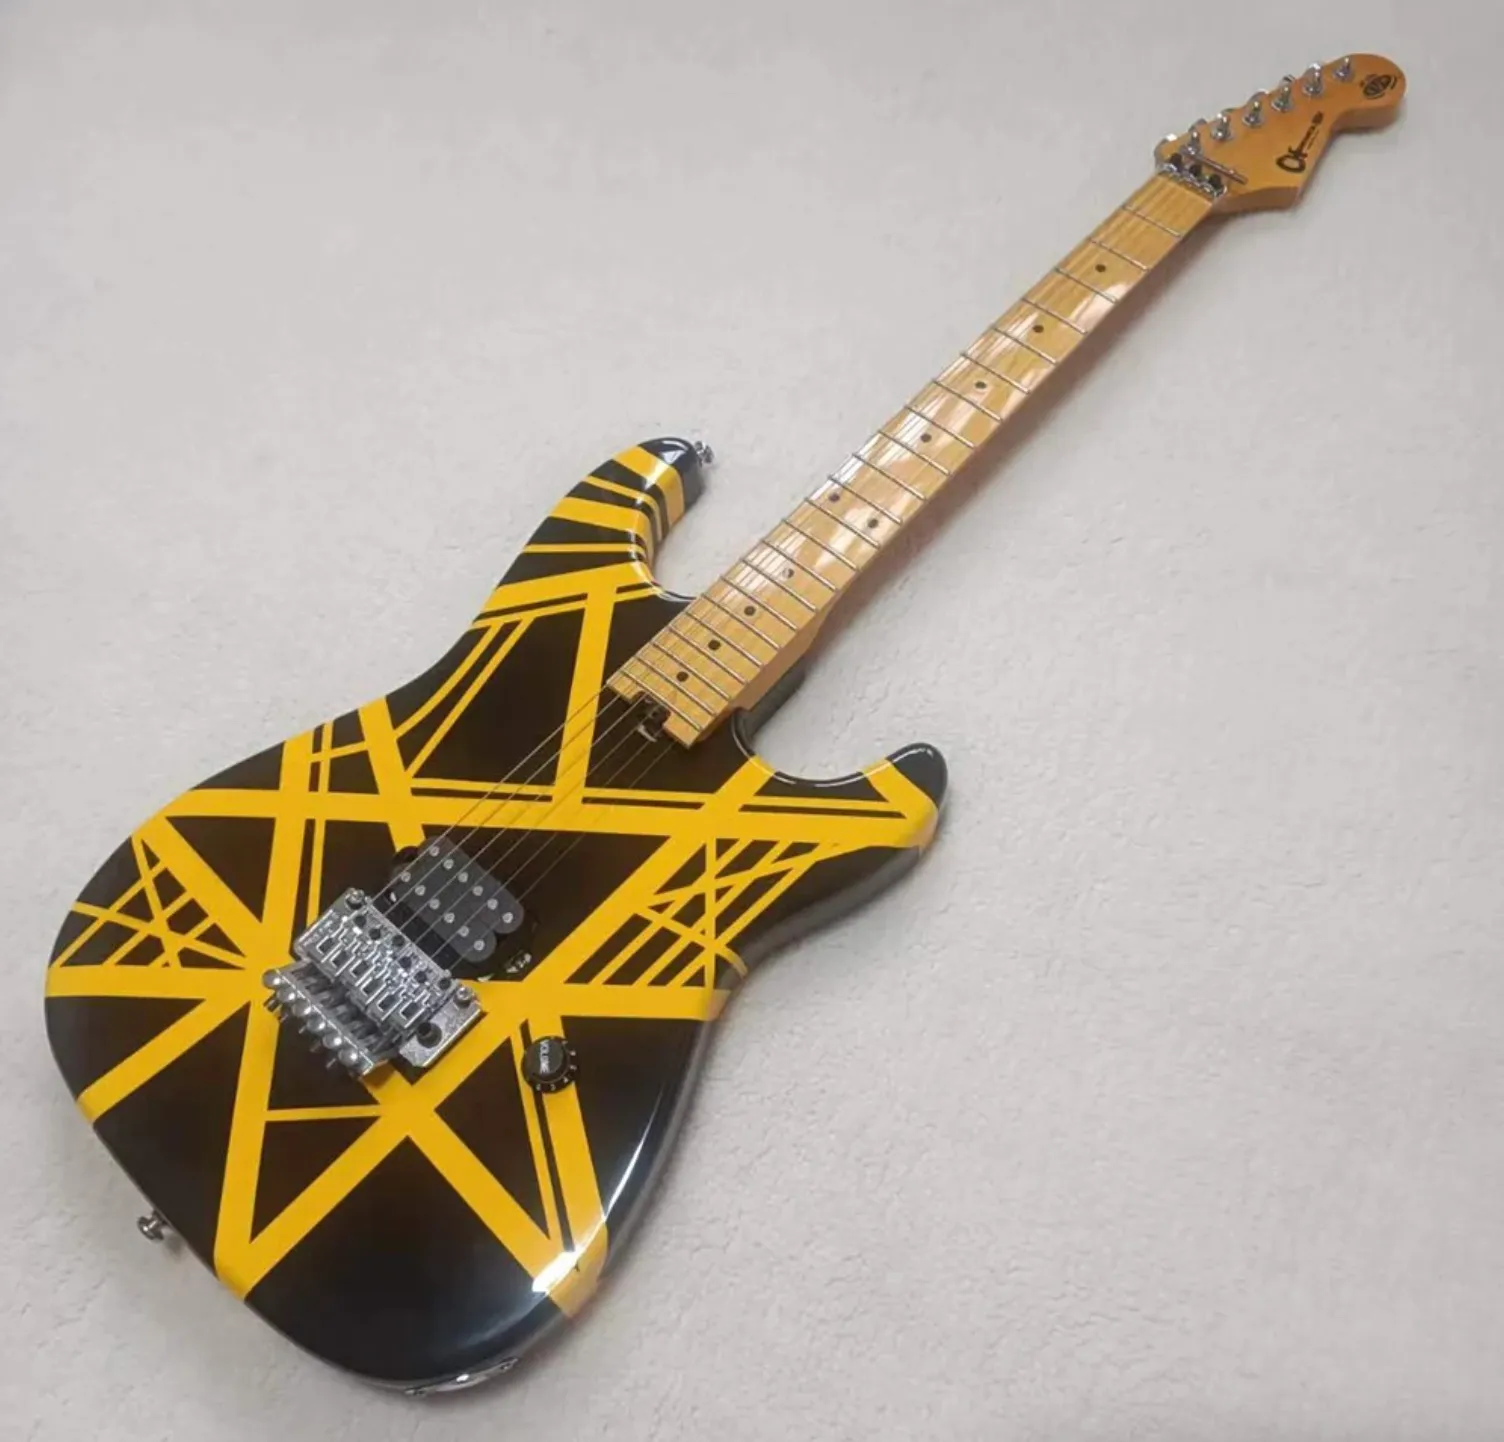 OEM chitarra elettrica personalizzata 5150, strisce gialle, dado di bloccaggio, chitarra Floyd Rose Tremolo Bridge